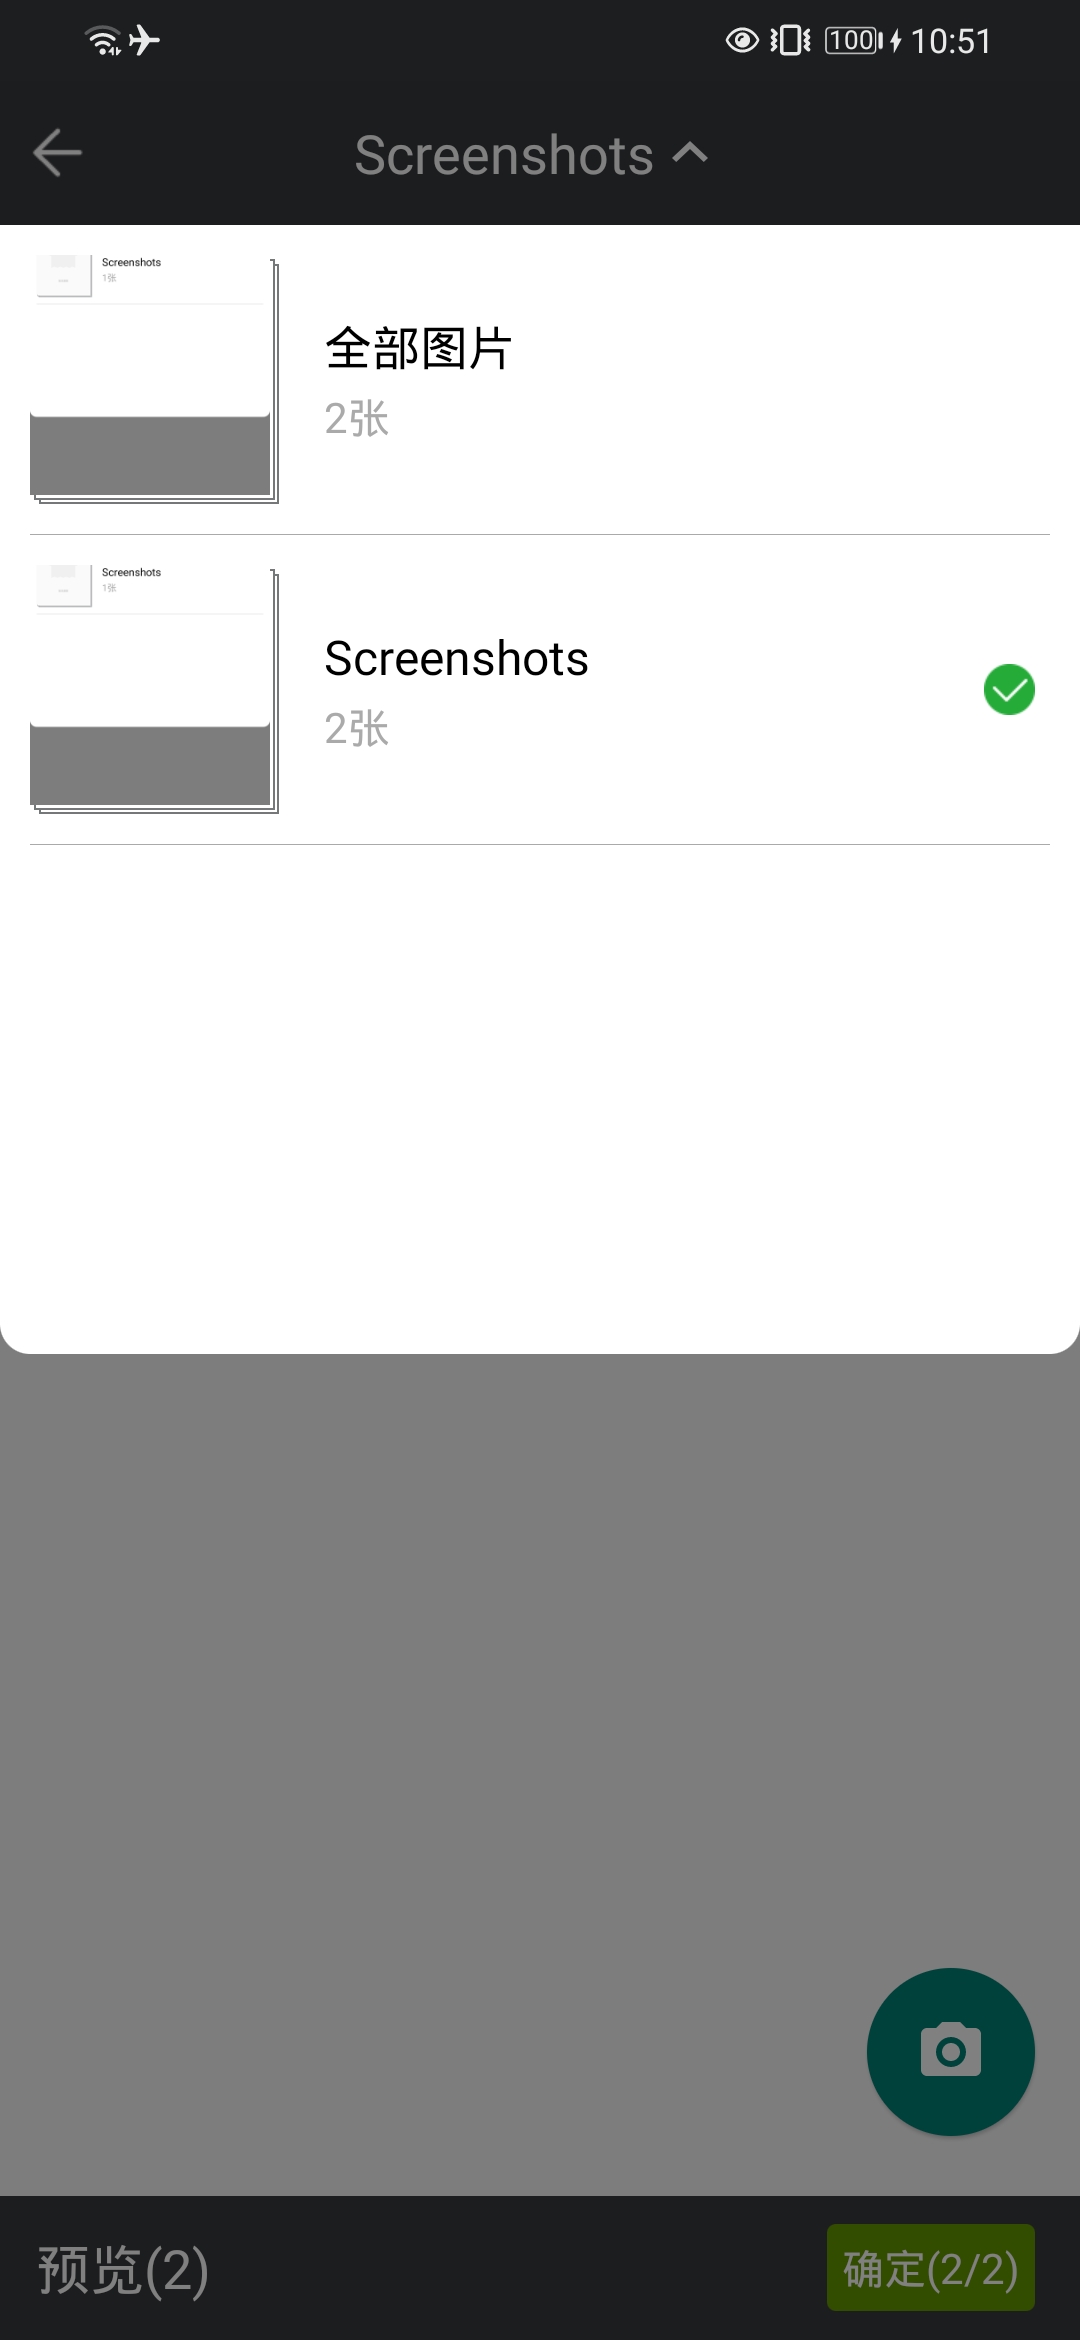 Android图片预览功能（可旋转、缩放、左右切换）_android 下载图片类似左边简略图右边大图浏览图片-CSDN博客